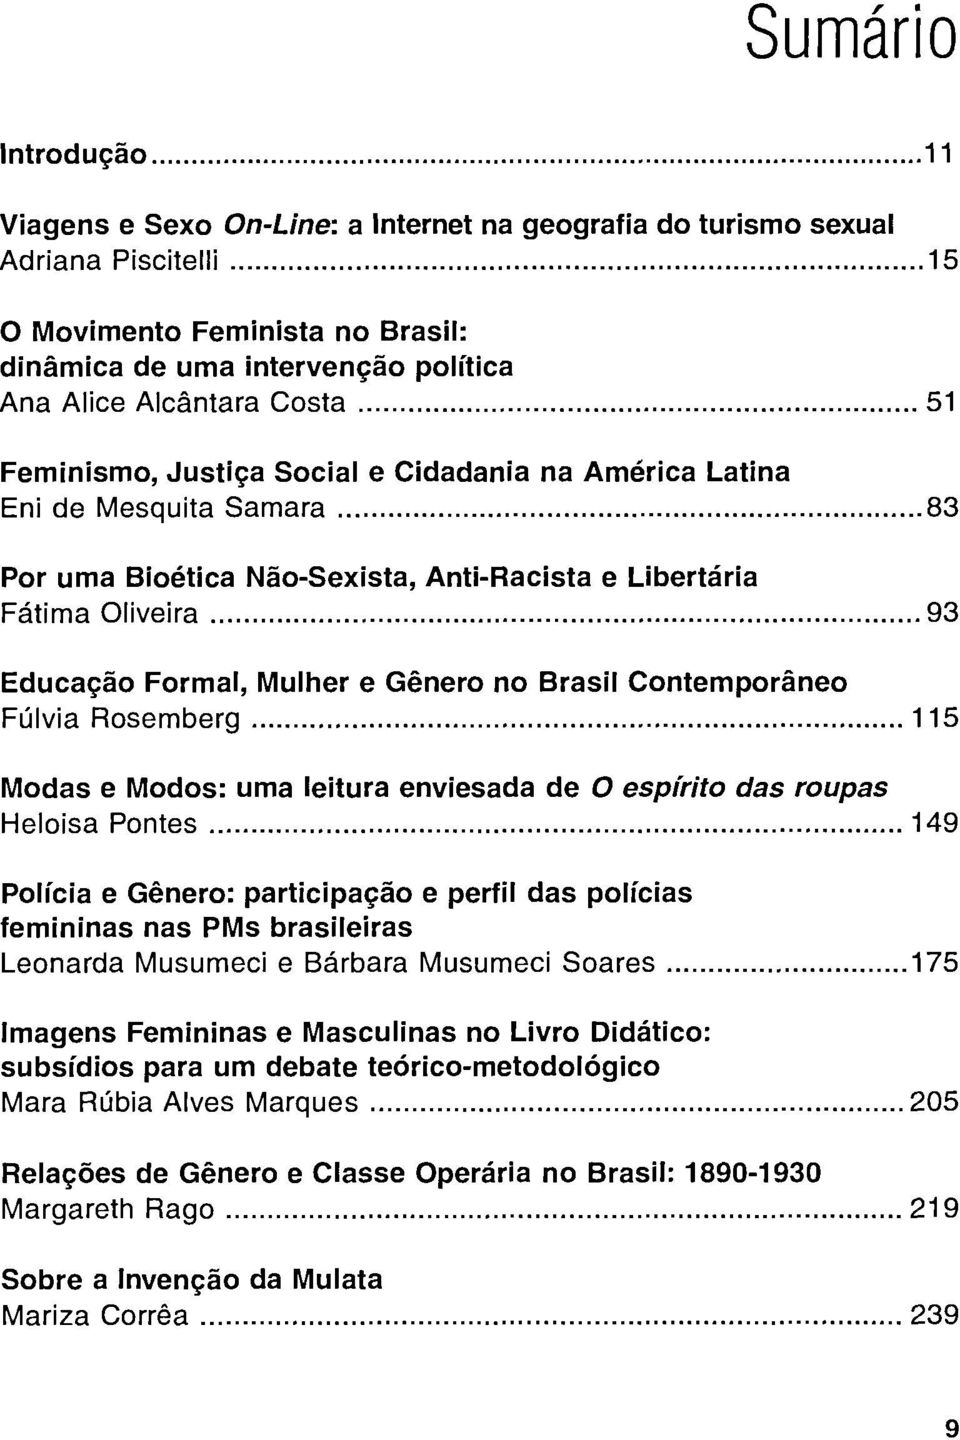 Mulher e Género no Brasil Contemporáneo Fúlvia Rosemberg 115 Modas e Modos: urna leitura enviesada de O espirito das roupas Heloisa Pontes 149 Policía e Género: participaçâo e perfil das policías